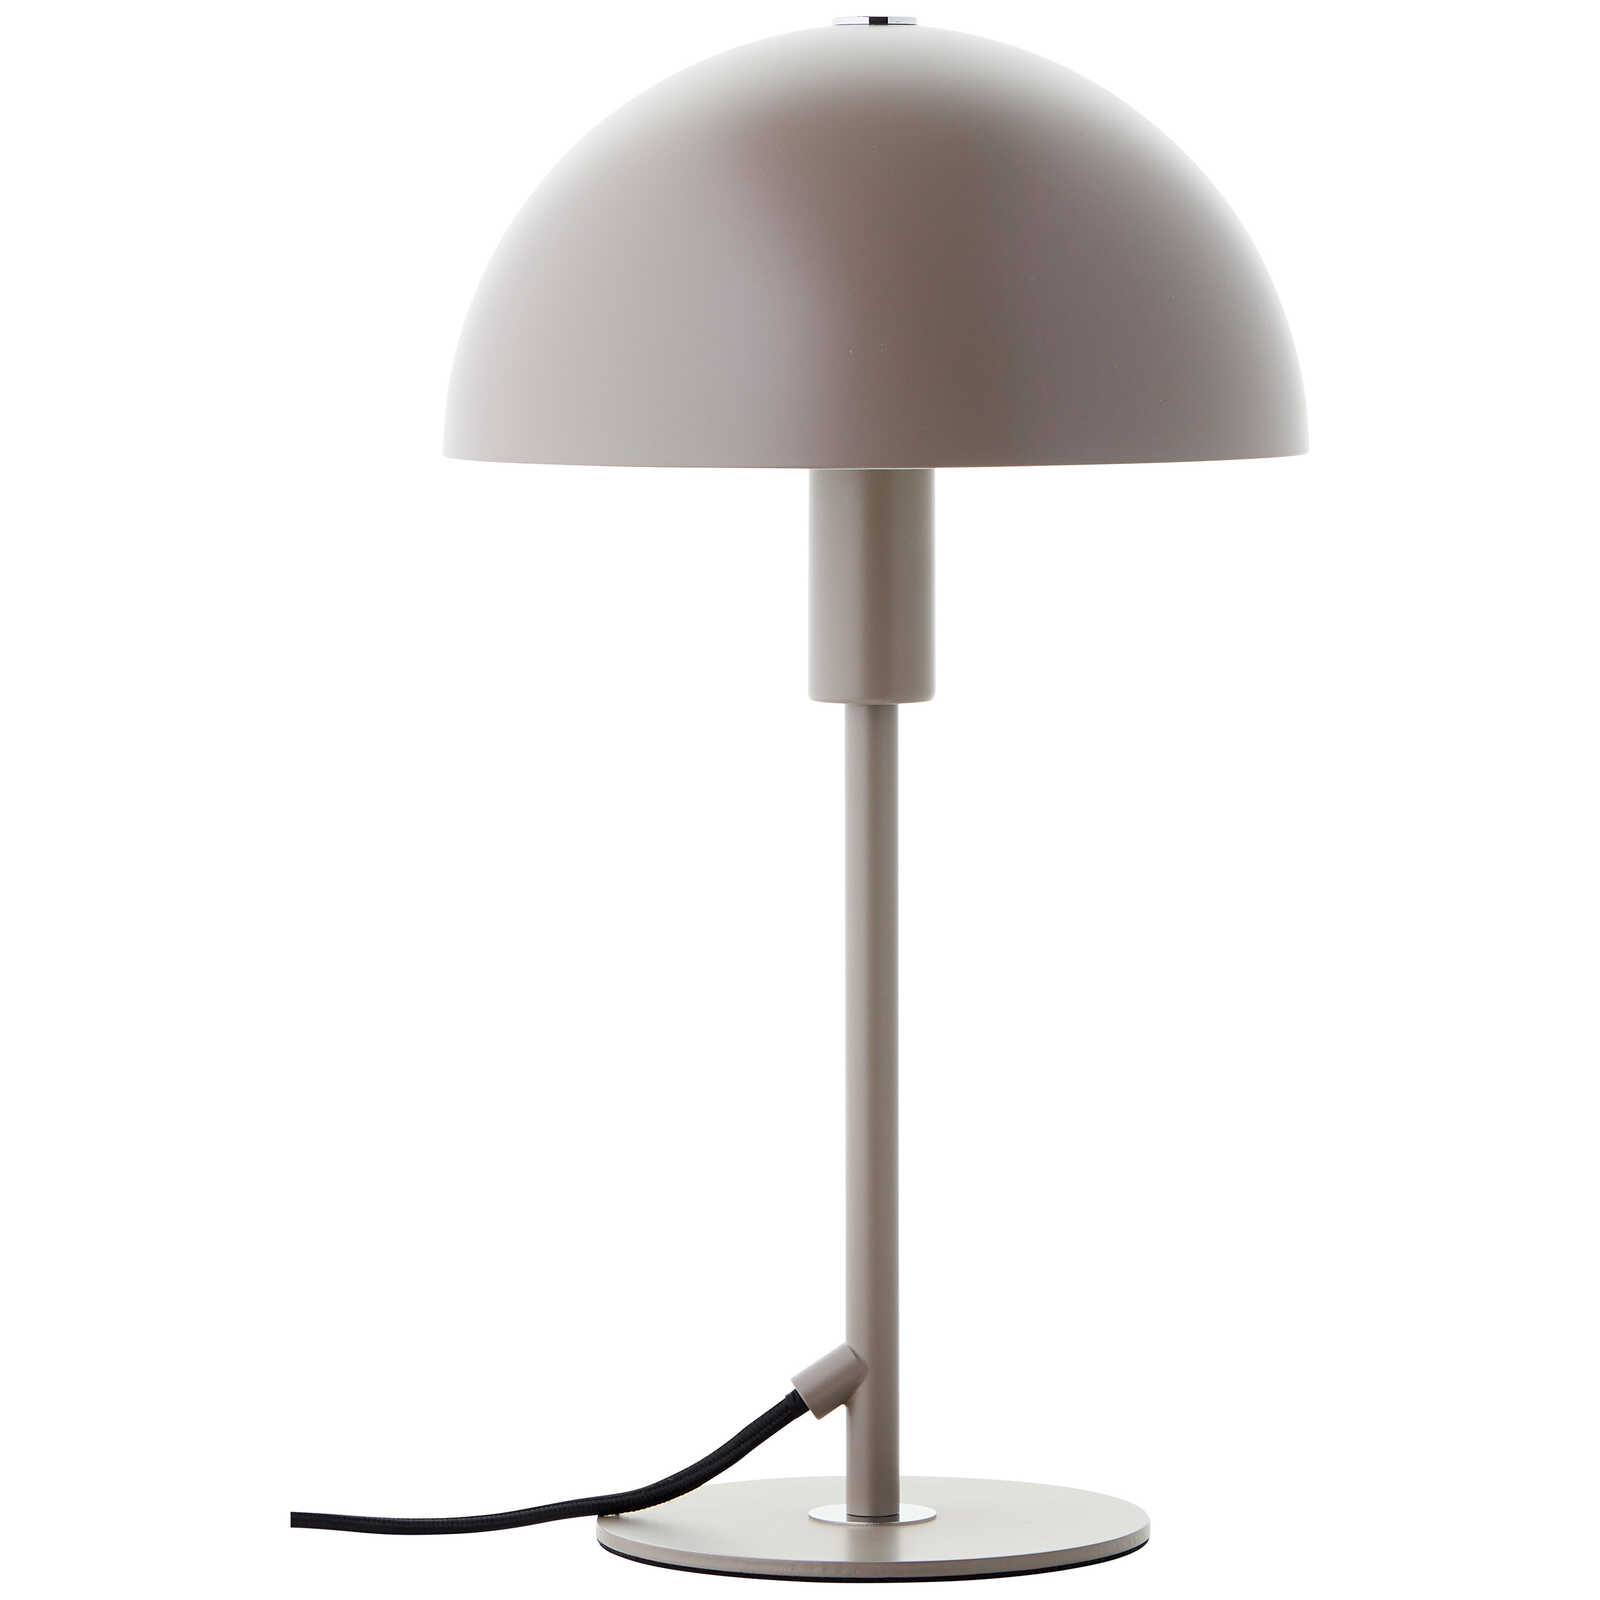             Metal table lamp - Lasse 2 - Grey
        